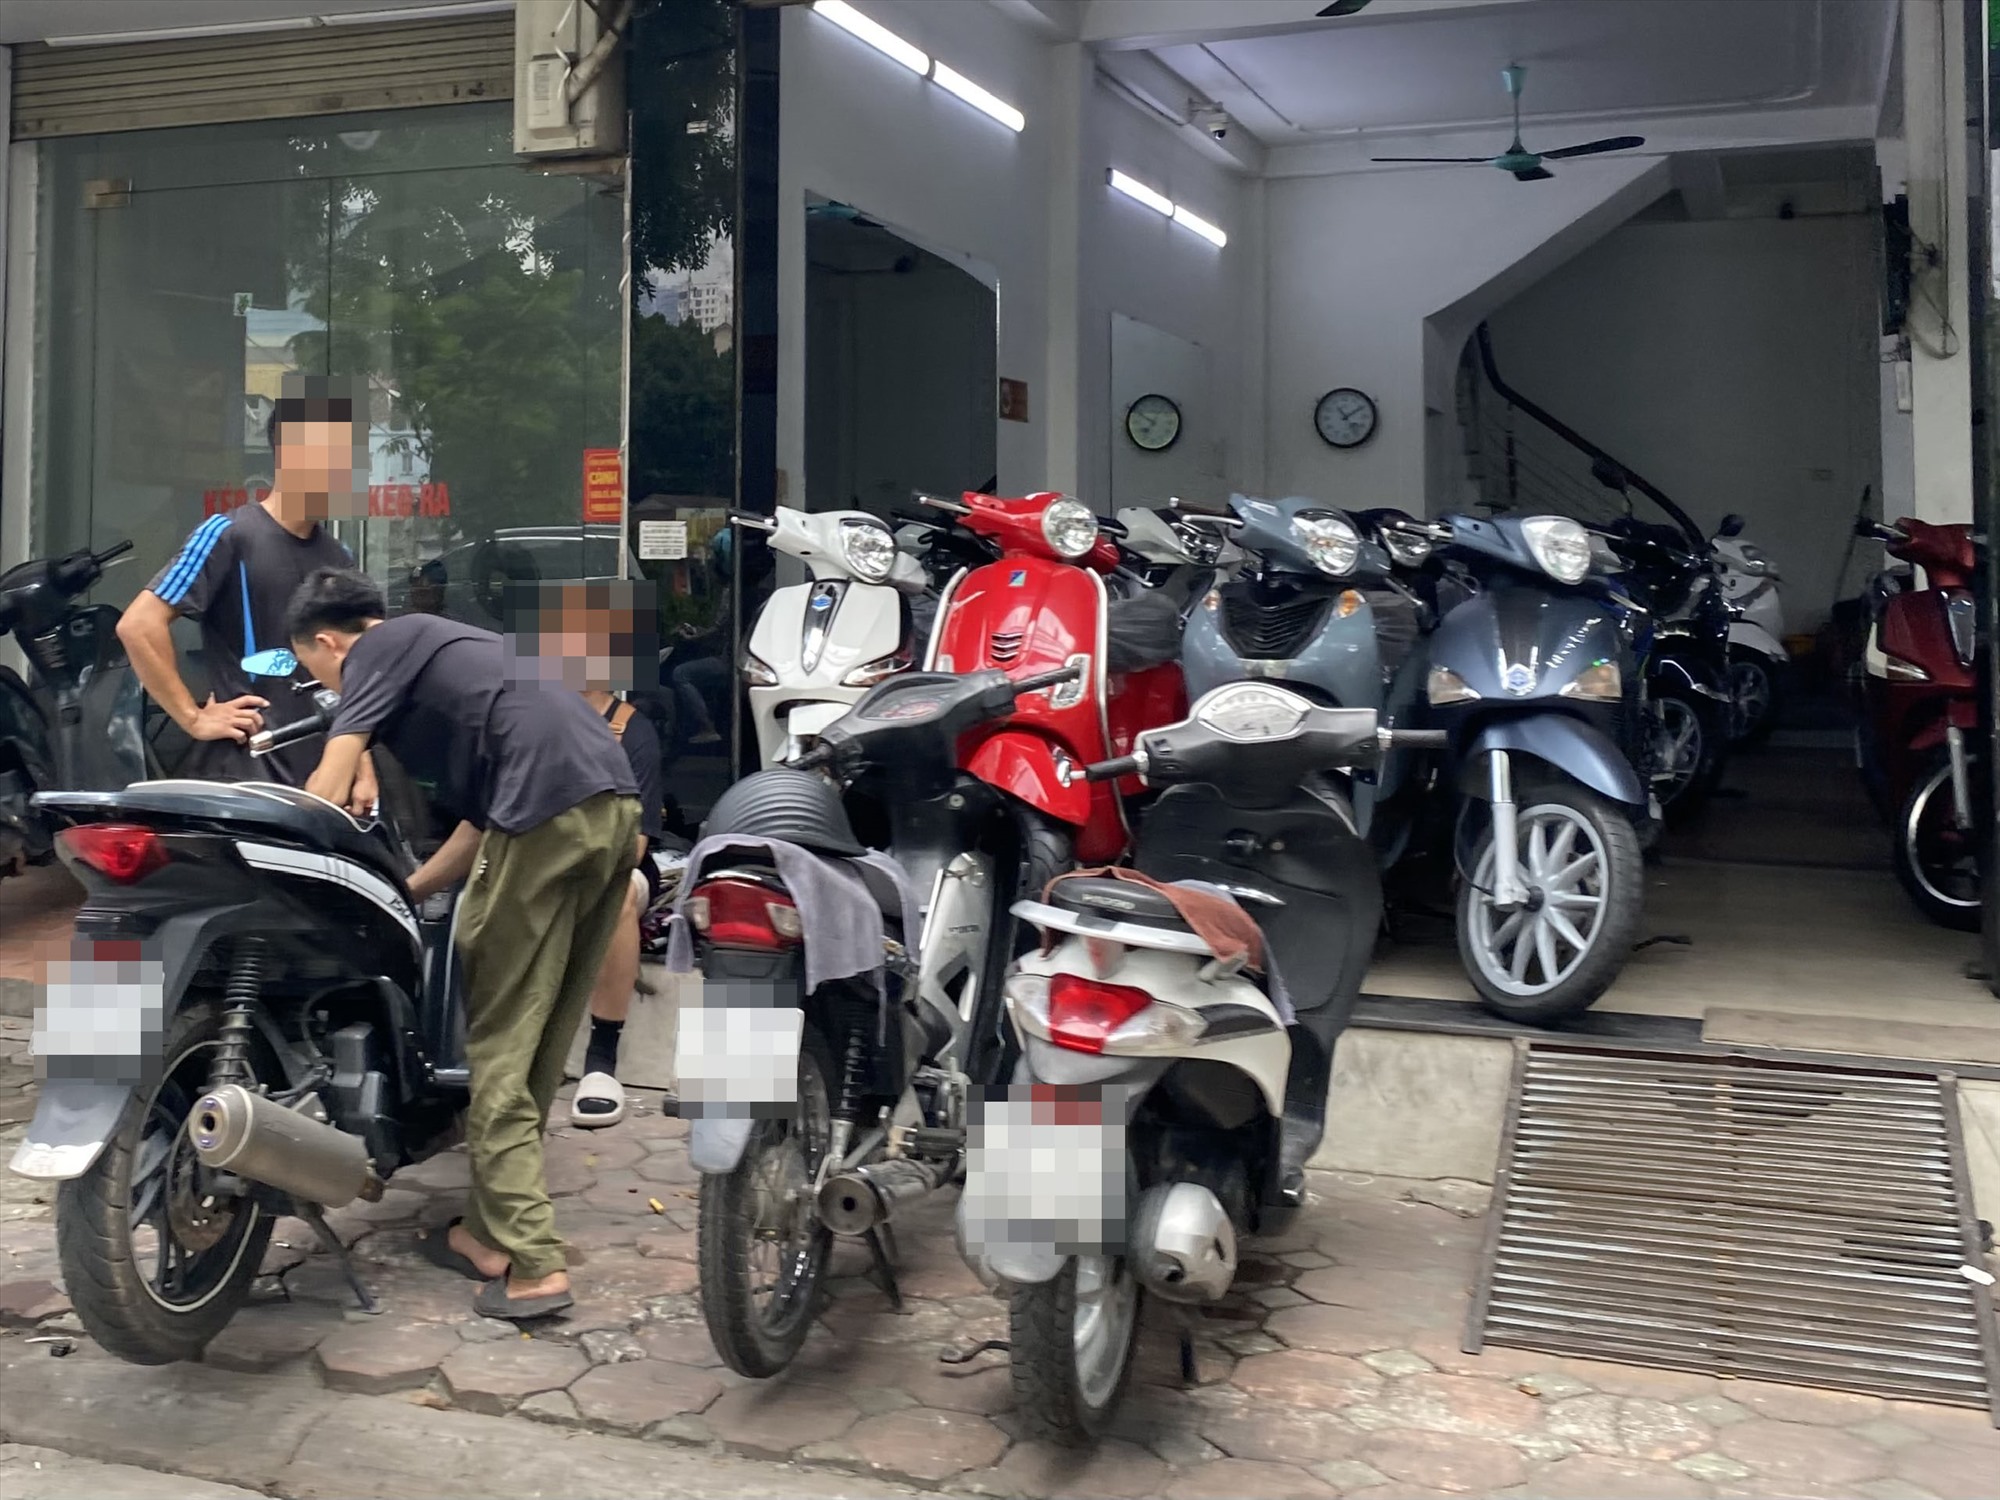 Chợ xe máy cũ ở Hà Nội ế ẩm sau ngày cấp biển số xe theo mã định danh